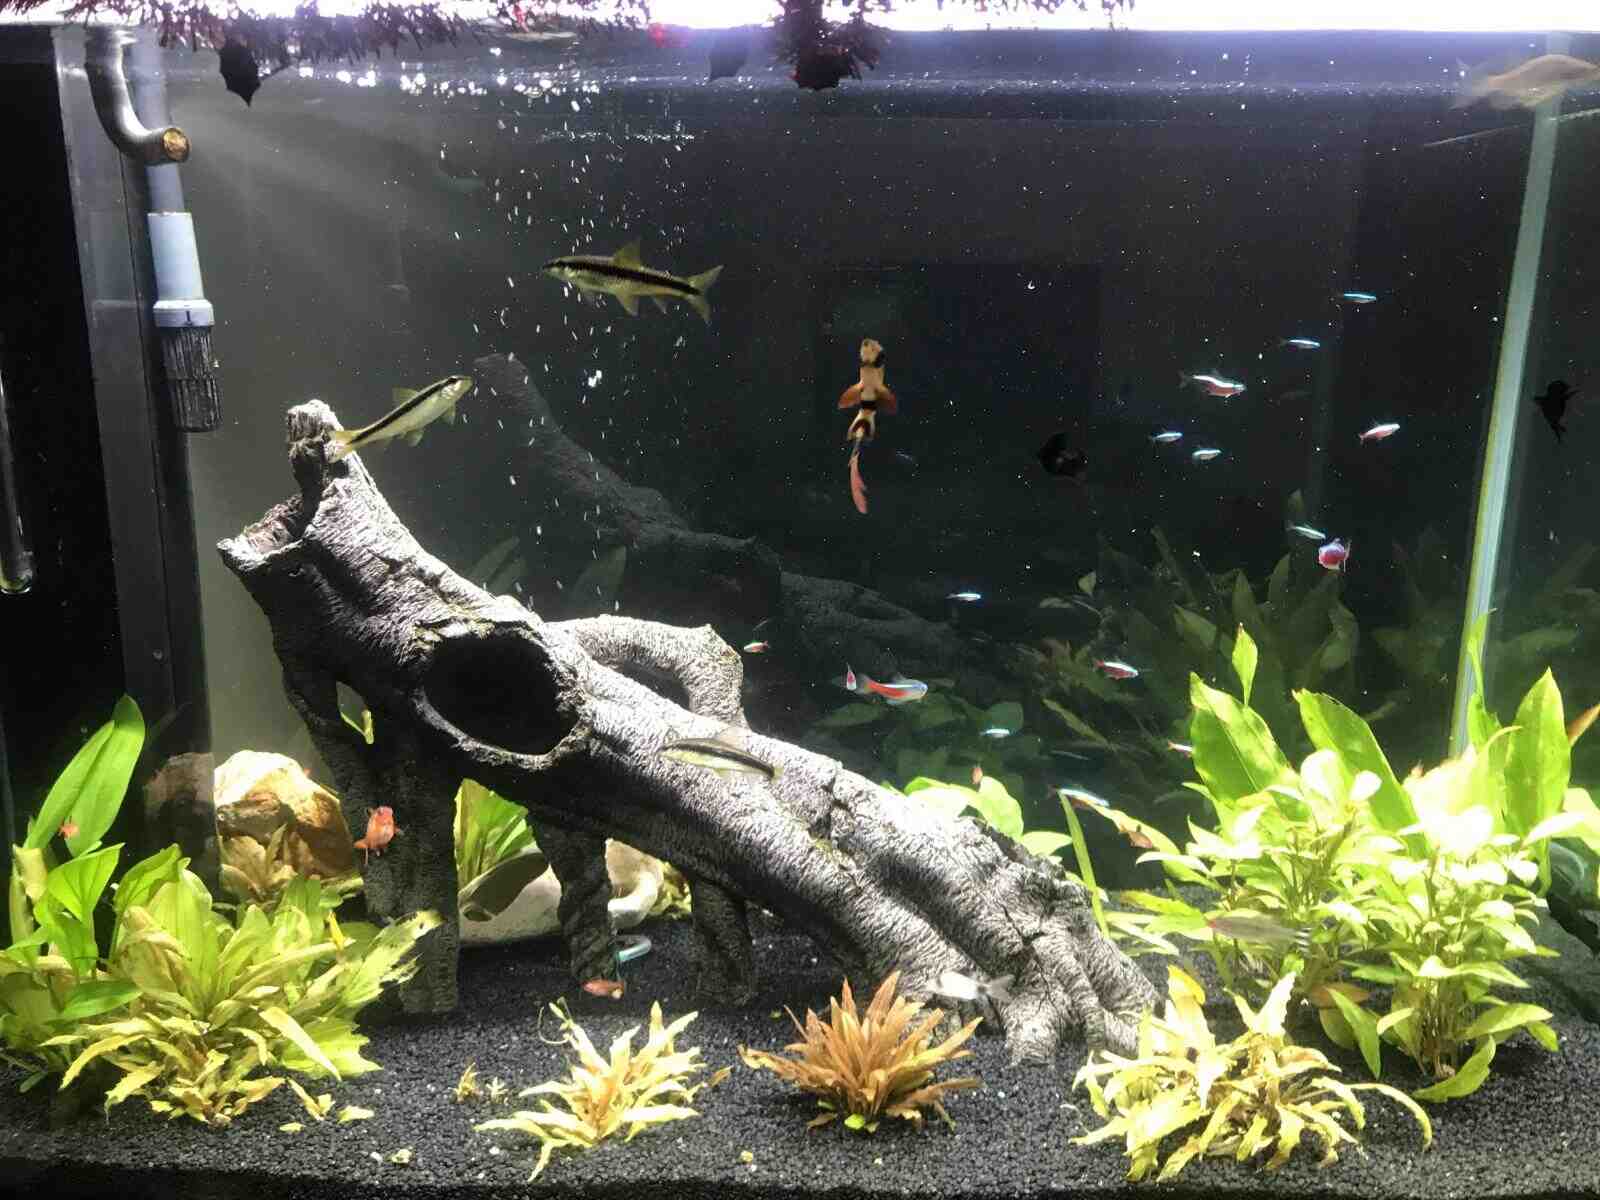 Comment gardez-vous les plantes au fond de l'aquarium?